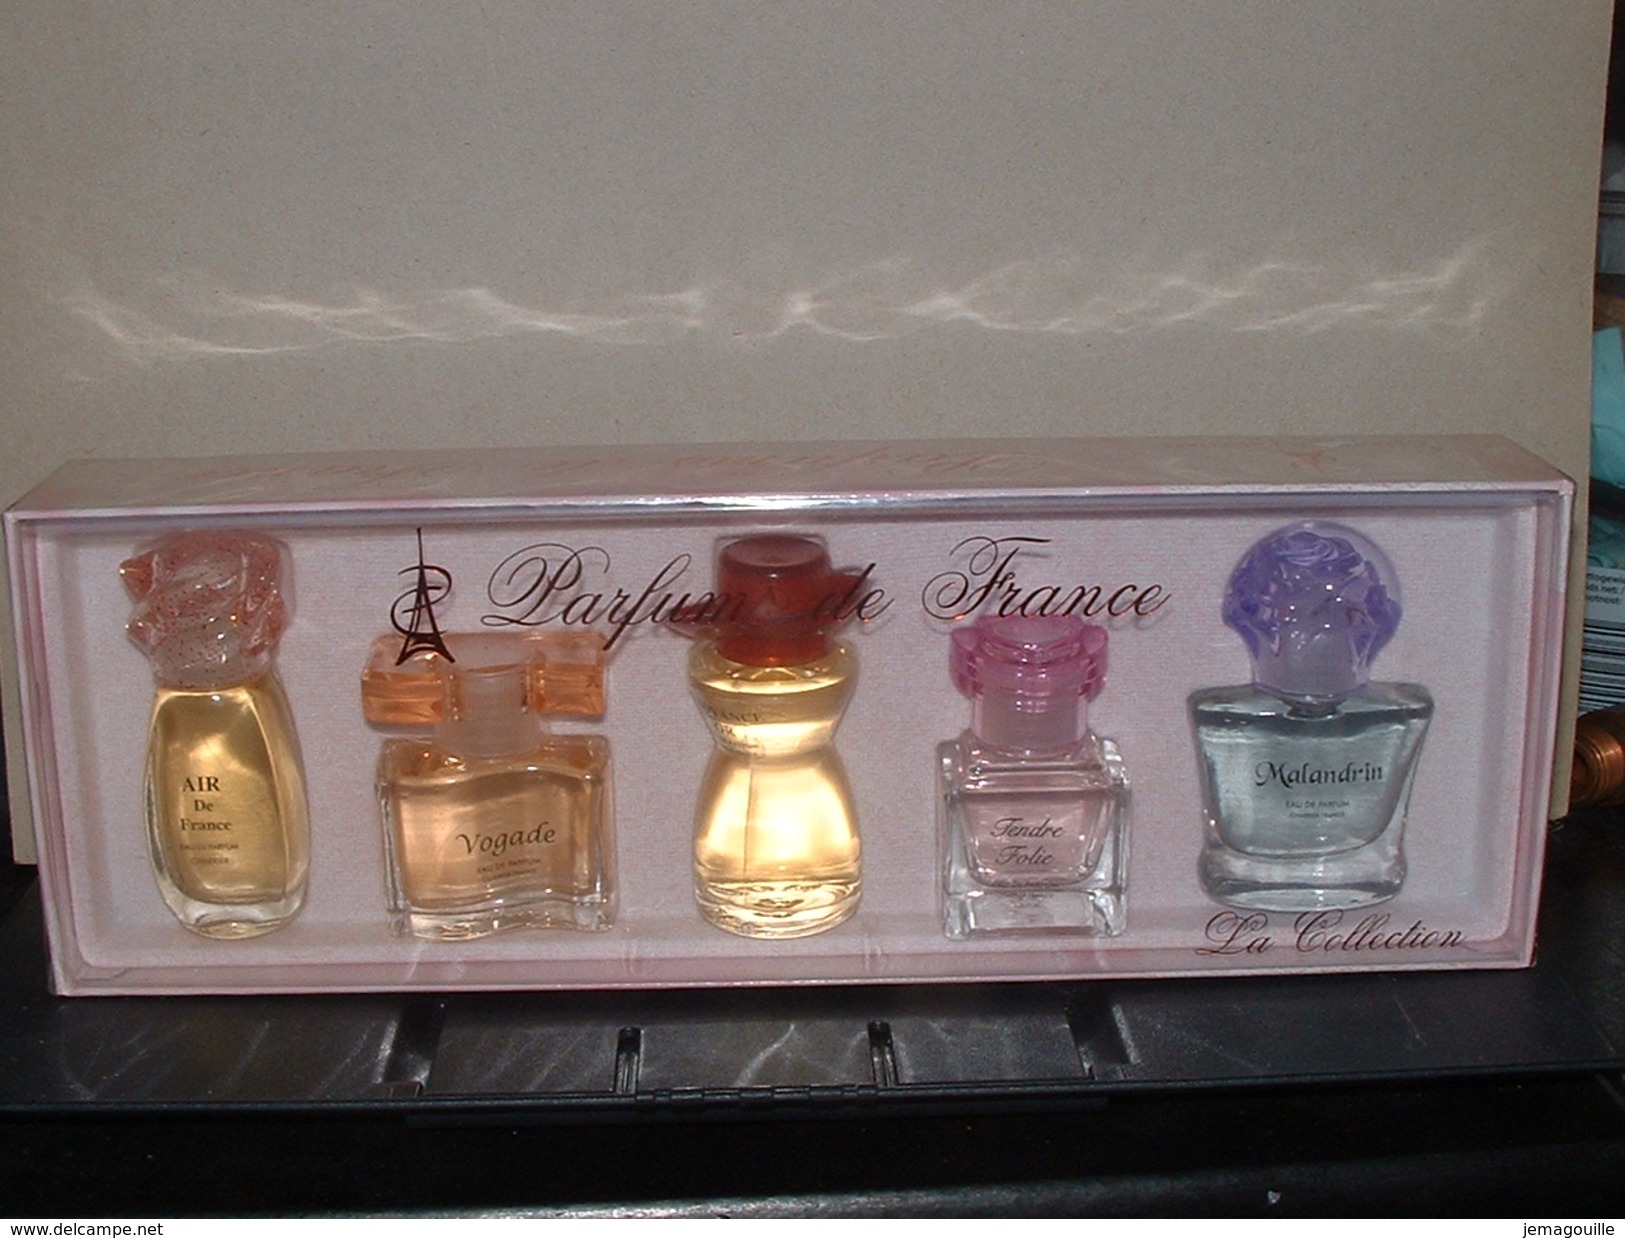 Coffret De 5 Miniatures - Parfums De France - CHARRIER PARFUMS - Air De France,Vogage Croyance Or,Tendre Folie,Malandrin - Miniatures Femmes (sans Boite)